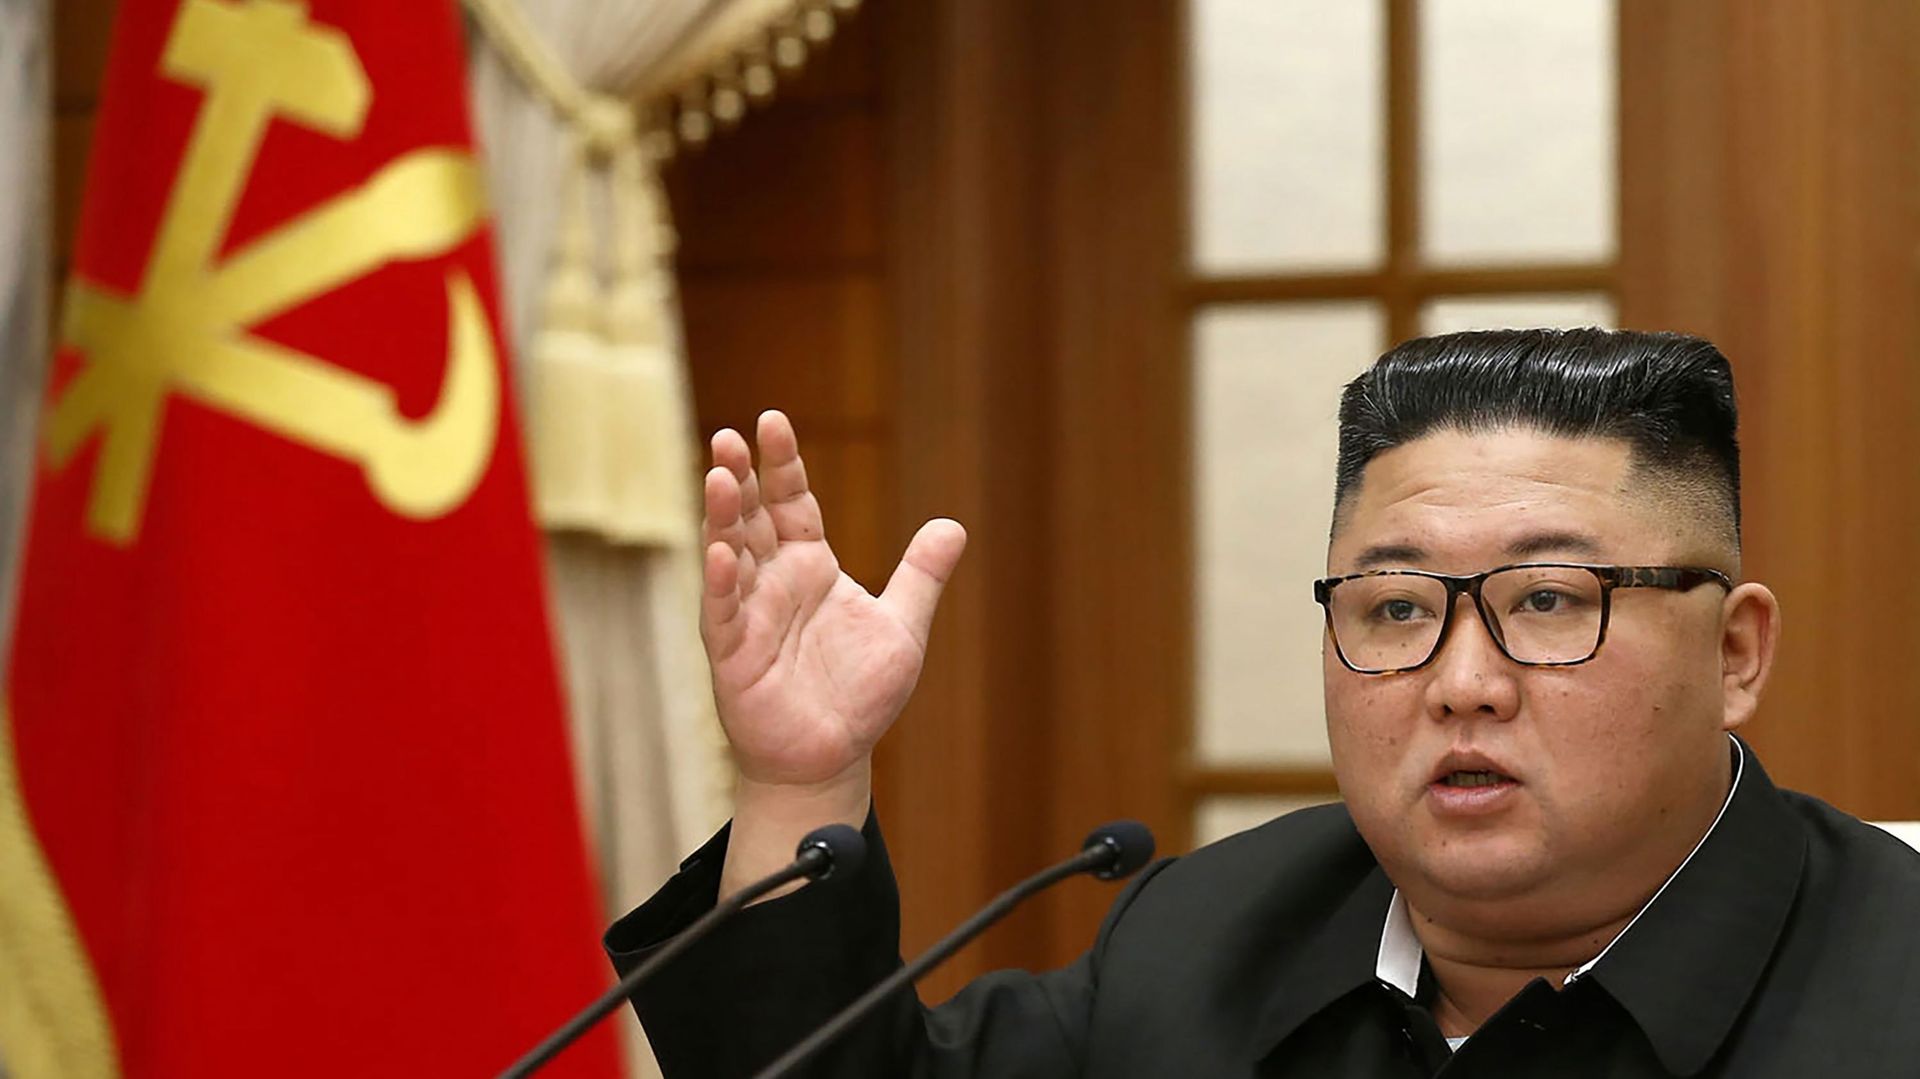 Le dirigeant nord-coréen Kim Jong Un a ordonné une campagne nationale de 80 jours afin de relancer l'économie.